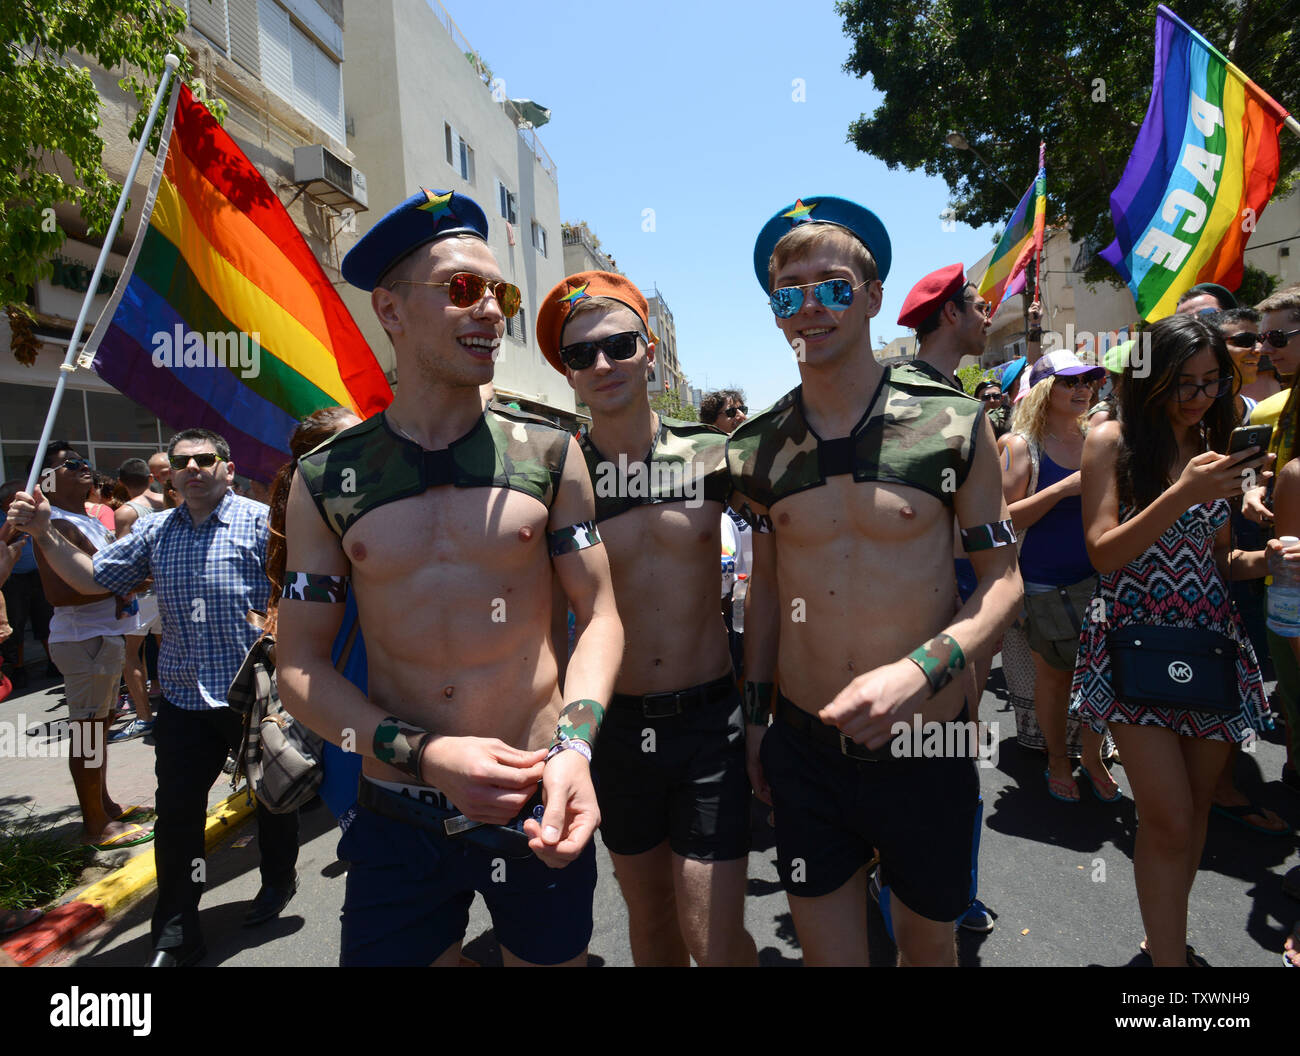 Los turistas gays visten trajes en la 17ª anual Desfile del Orgullo Gay en Tel Aviv, Israel, 12 de junio de 2015. Más de 180.000 marcharon en el desfile, incluidos 30.000 turistas. El tema del desfile fue "Tel Aviv ama todos los géneros", en un esfuerzo por promover la igualdad de derechos a los miembros de la comunidad transgénero. Foto por Debbie Hill/UPI Foto de stock